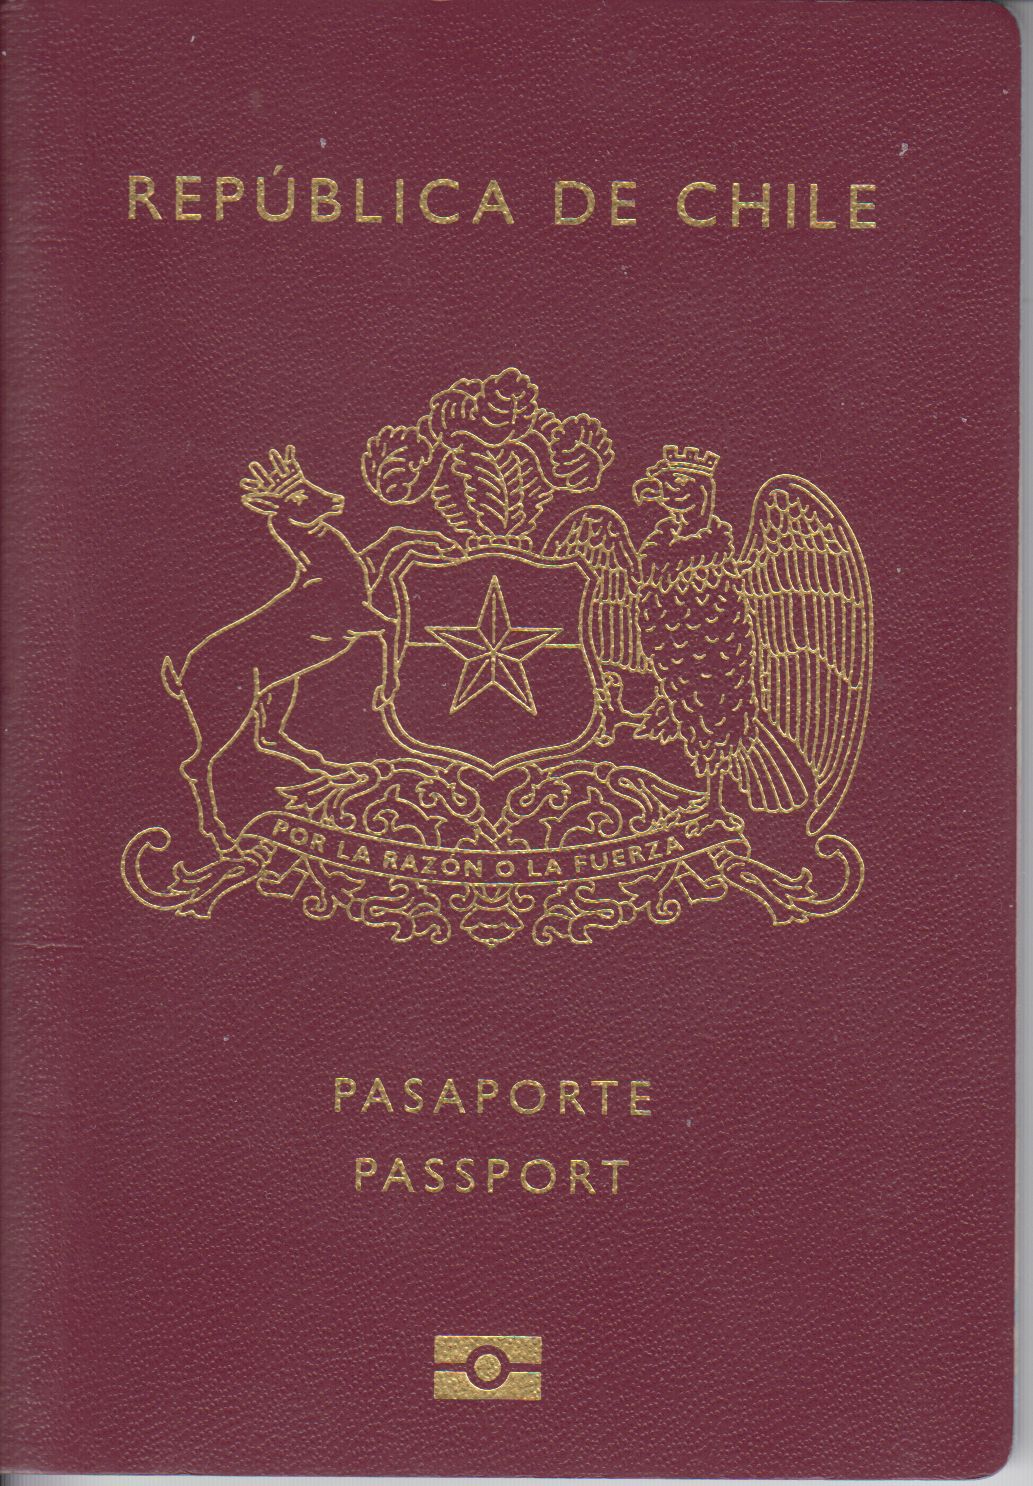 Los pasaportes